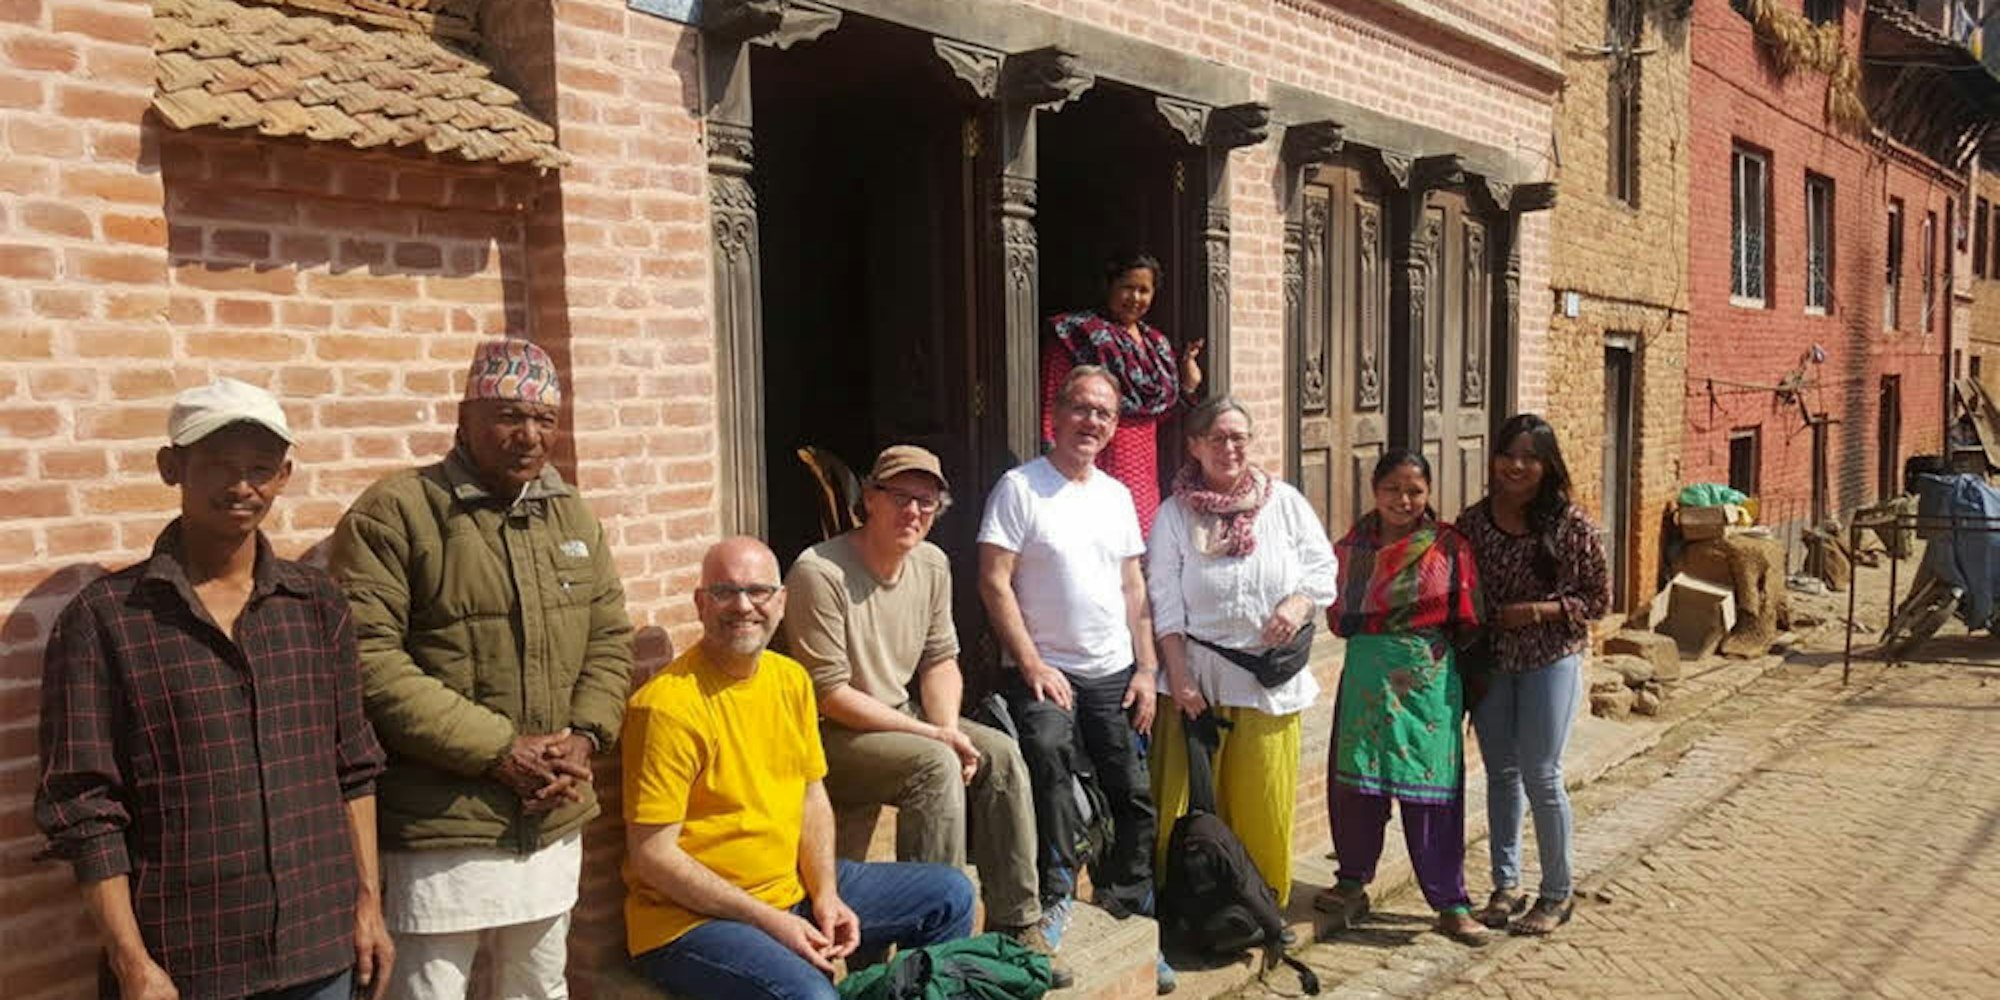 Die vier deutschen Helfer erlebten viel bei ihrer Nepalreise, arbeiteten gemeinsam mit den Einheimischen am Wiederaufbau nach den schweren Erdbeben.